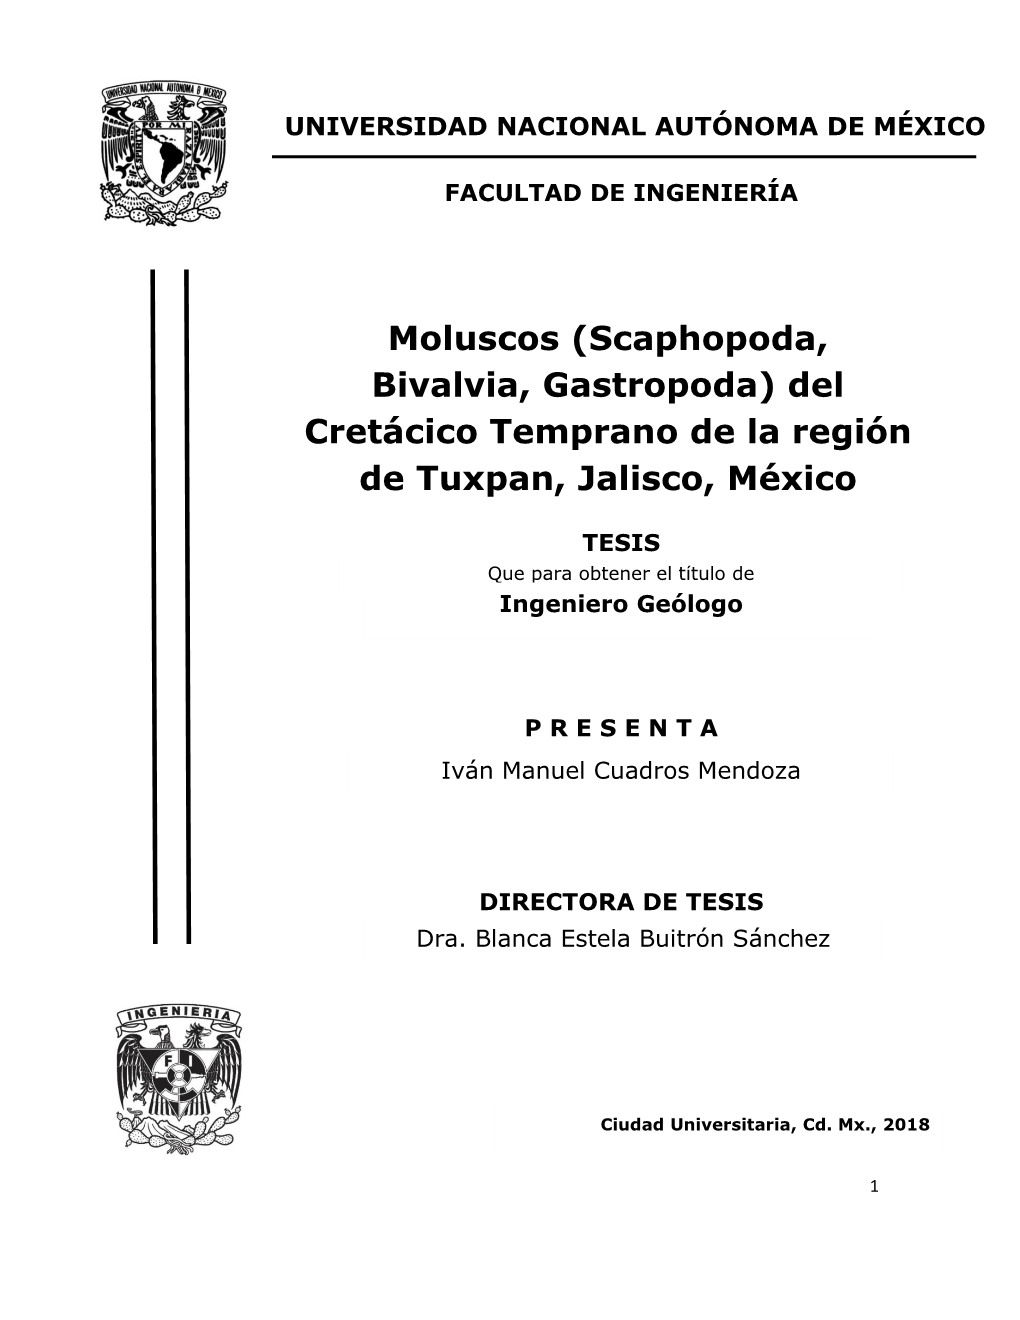 Moluscos (Scaphopoda, Bivalvia, Gastropoda) Del Cretácico Temprano De La Región De Tuxpan, Jalisco, México